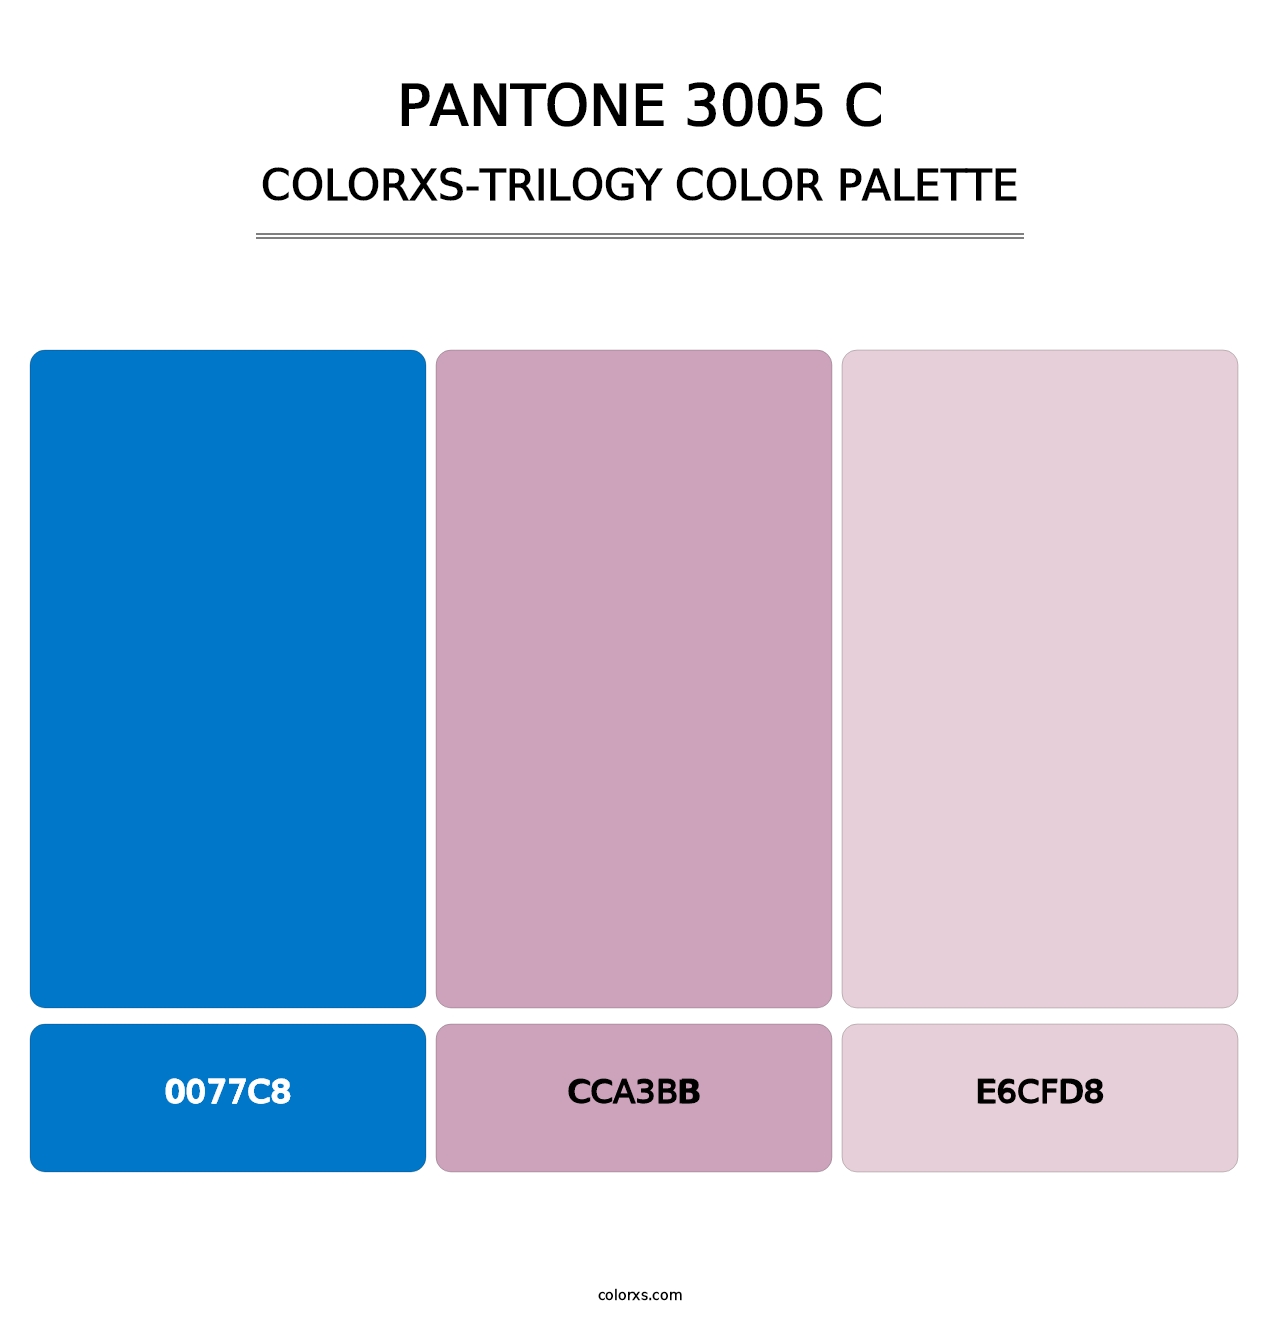 PANTONE 3005 C - Colorxs Trilogy Palette